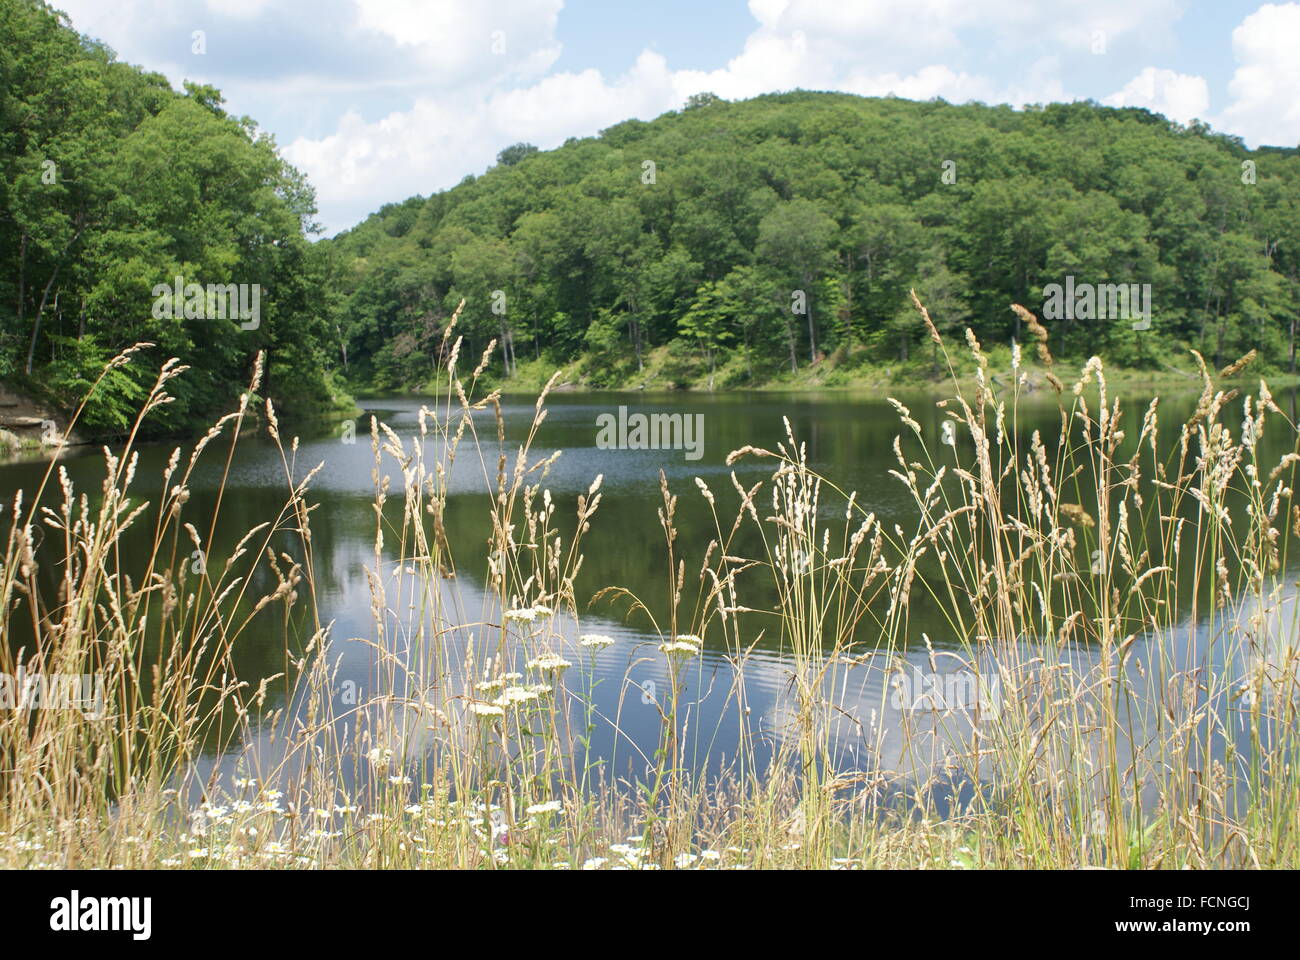 Un bellissimo lago pacifica con le colline, i boschi e gli alberi attorno ad esso con erba alta nella parte anteriore. Foto Stock